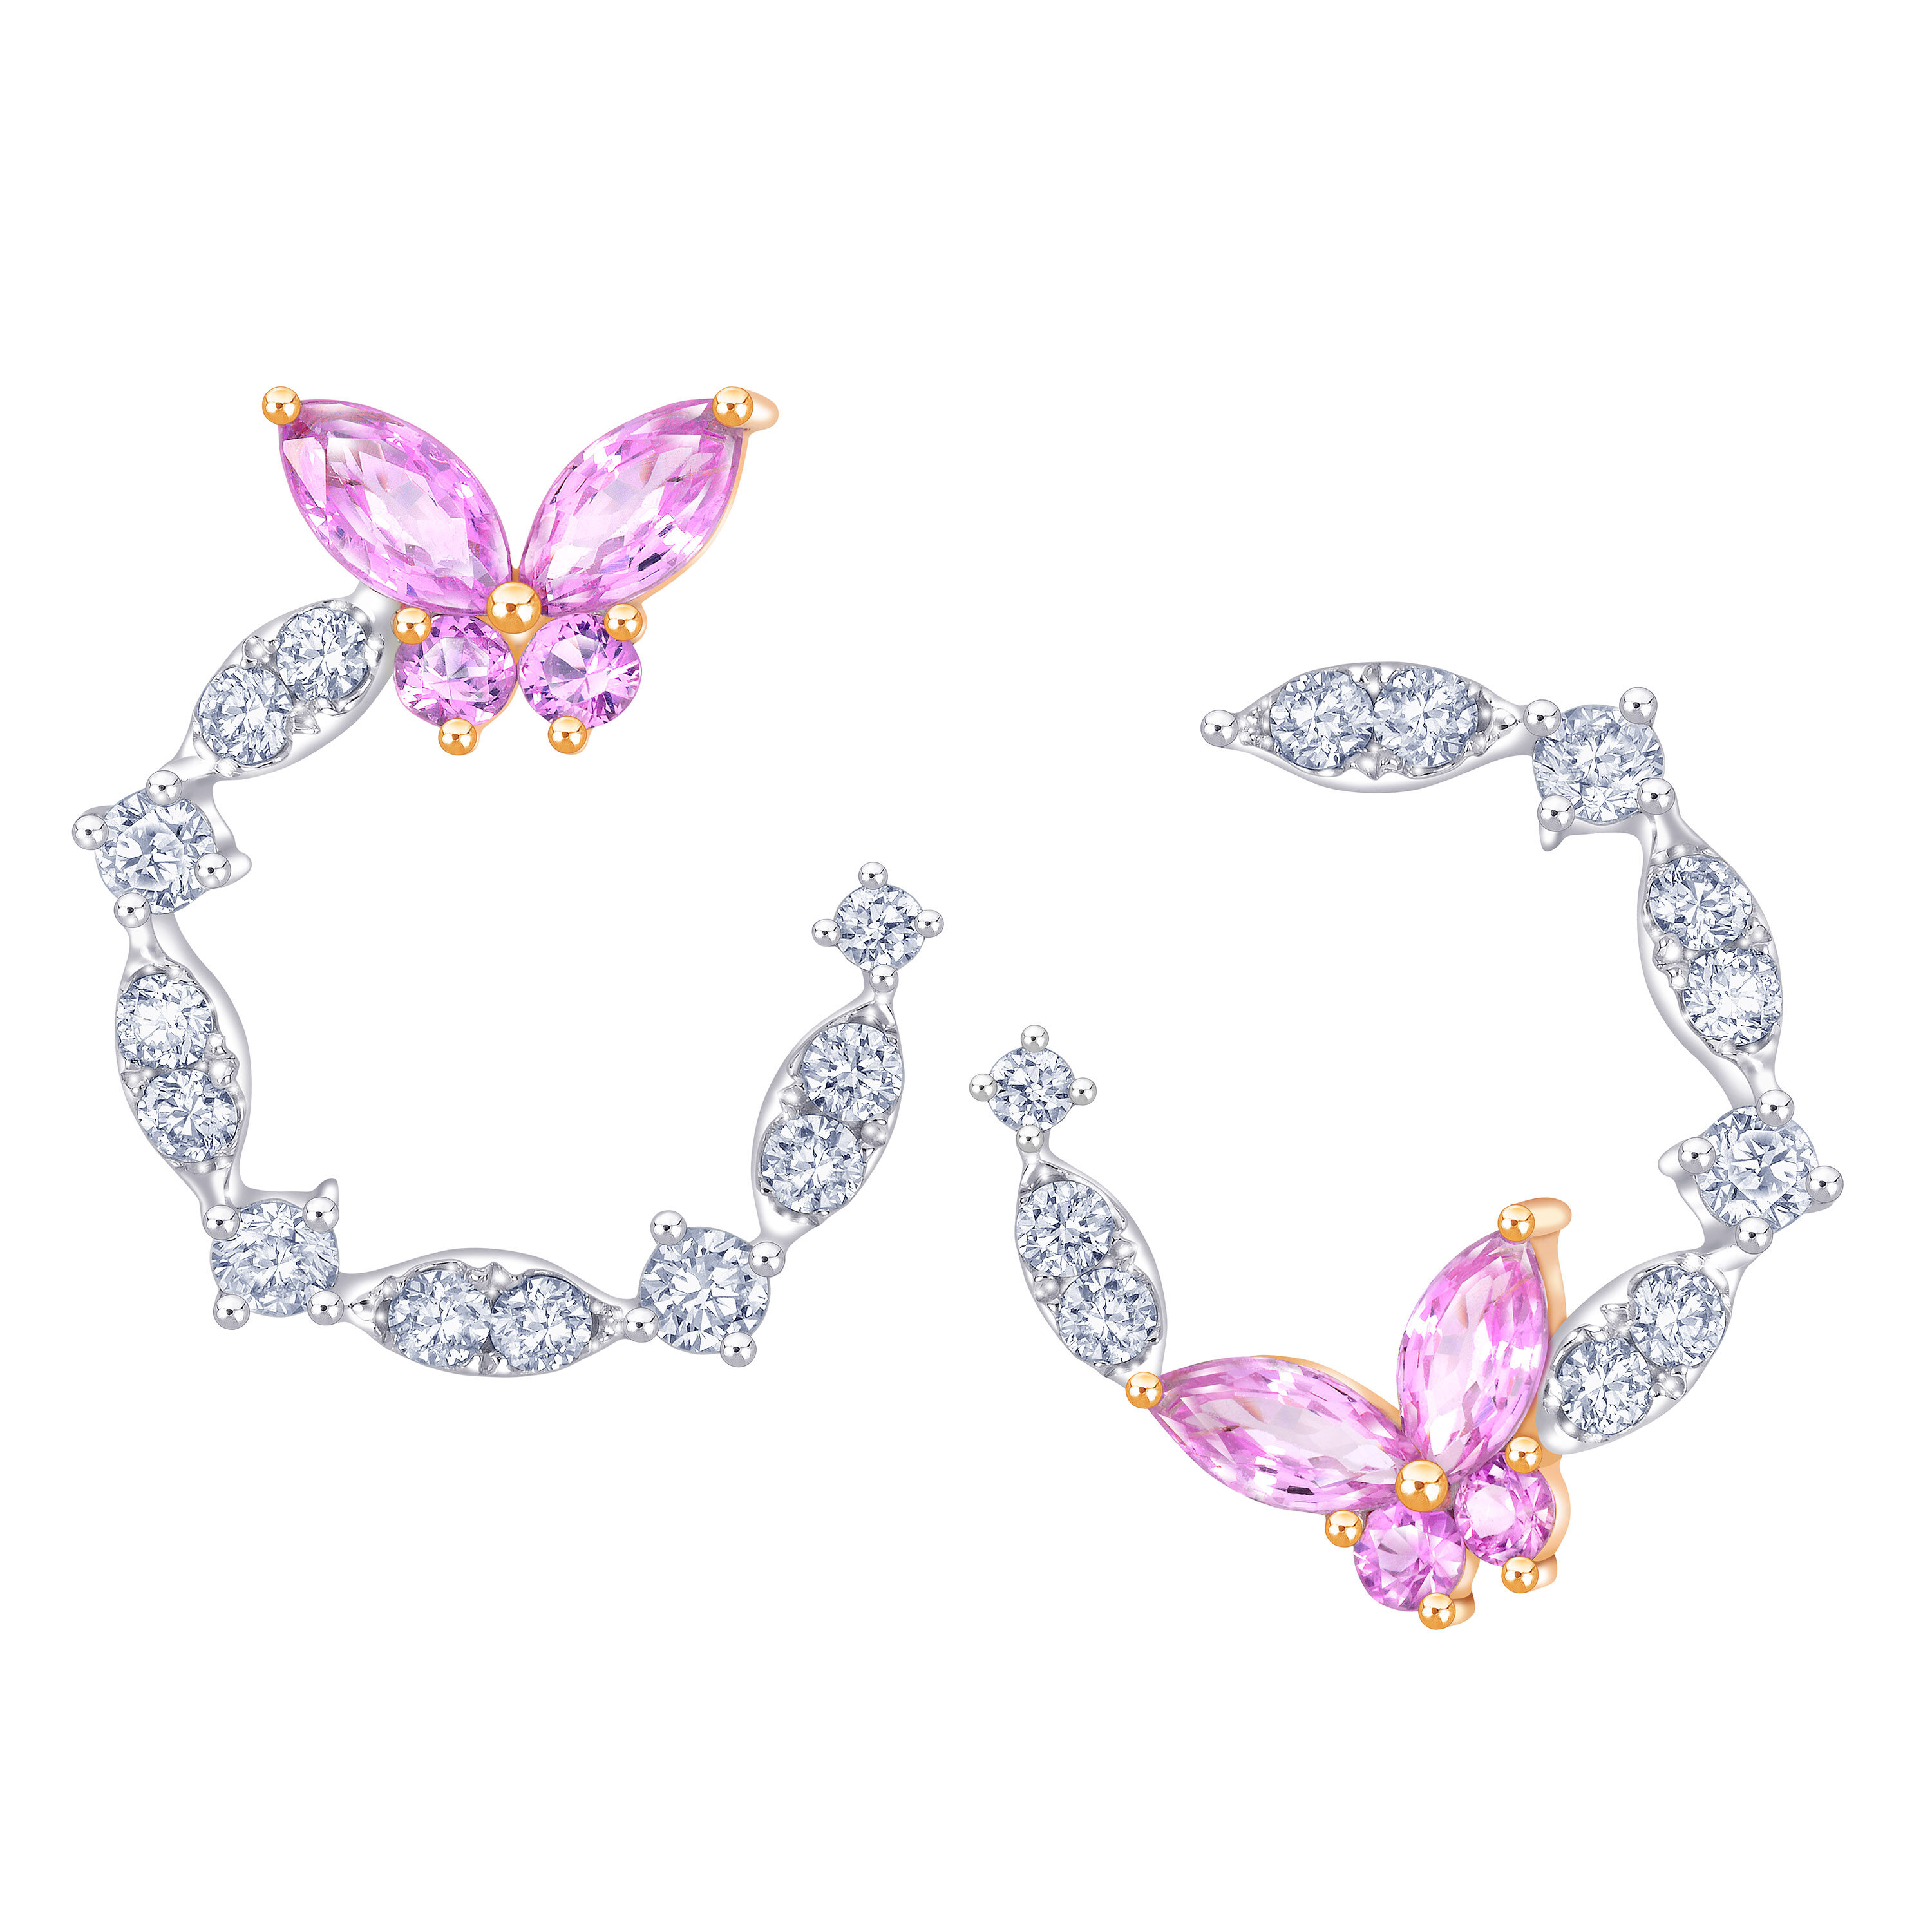 矚目的粉紅藍寶石蝴蝶造型，在鑽石花間飛舞，justdiamond「Fly in Love」系列就是以如此